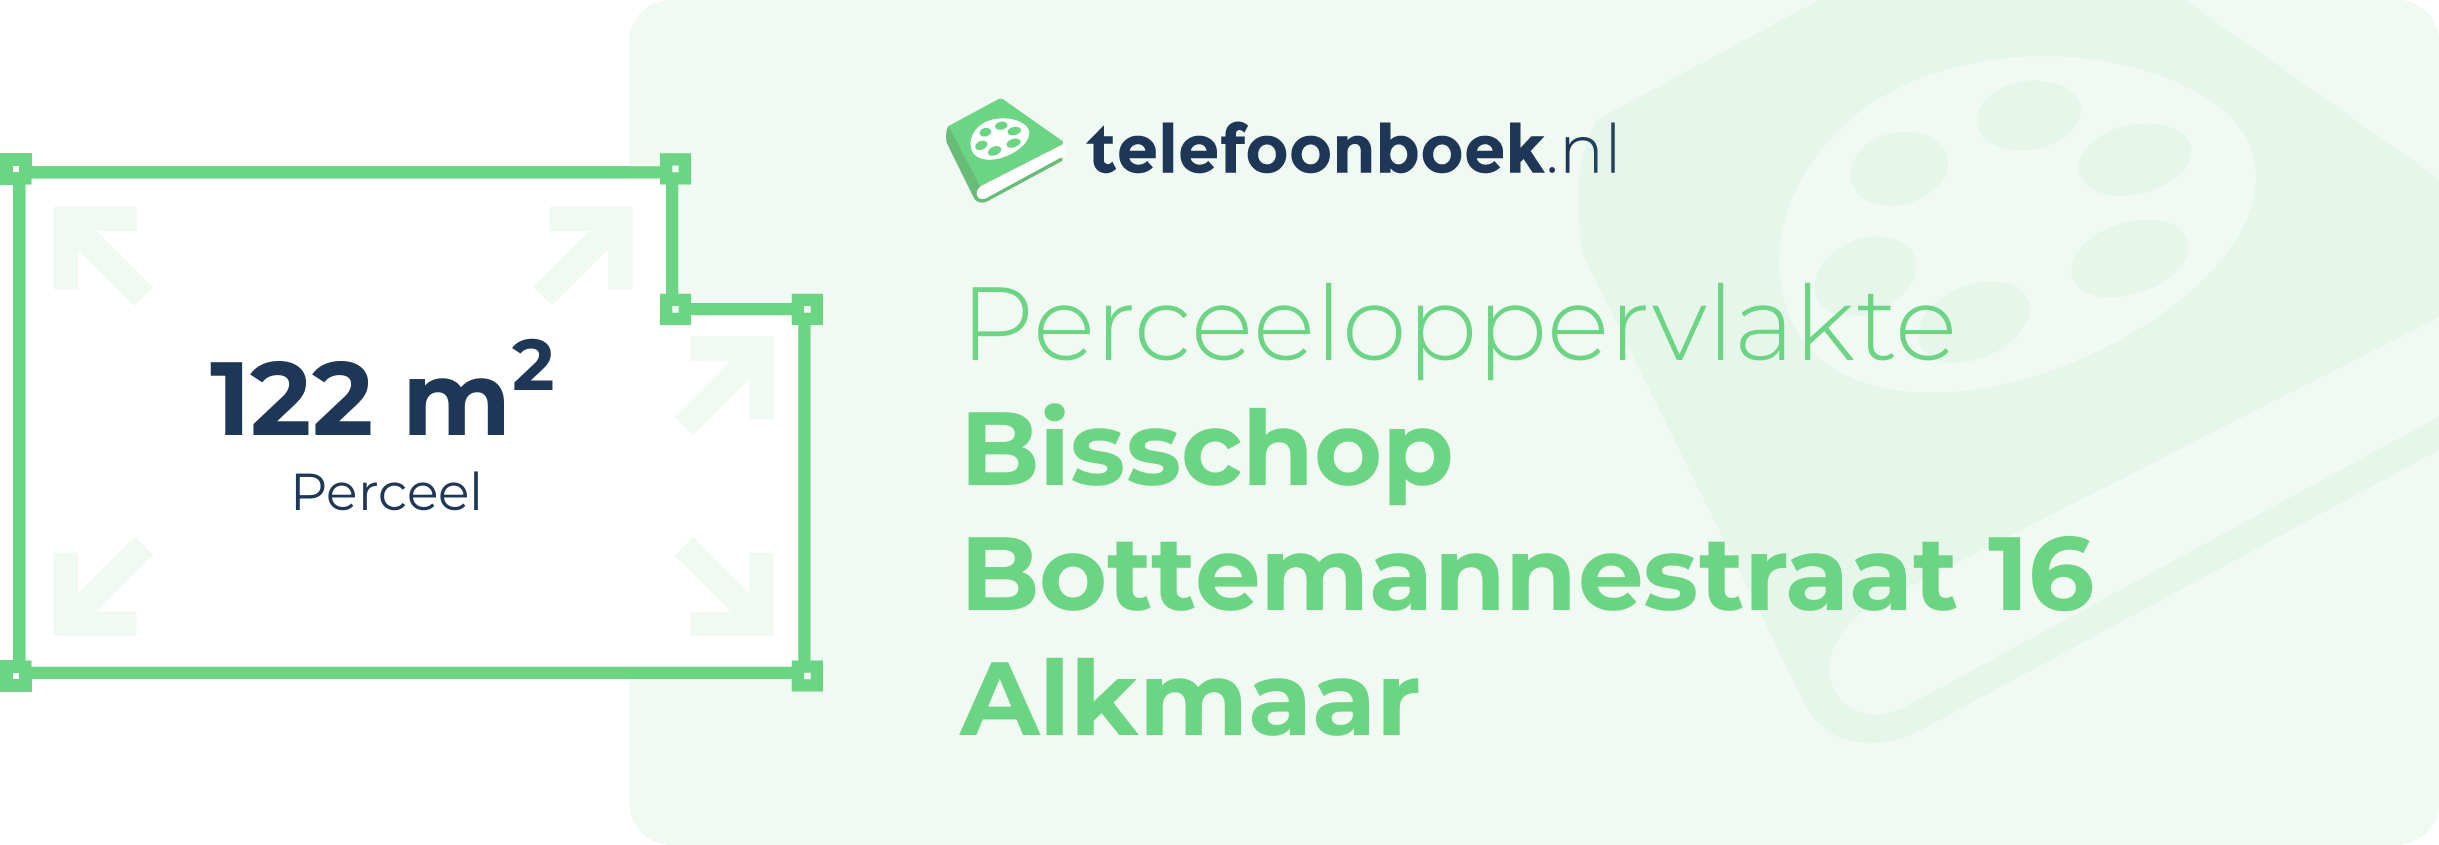 Perceeloppervlakte Bisschop Bottemannestraat 16 Alkmaar